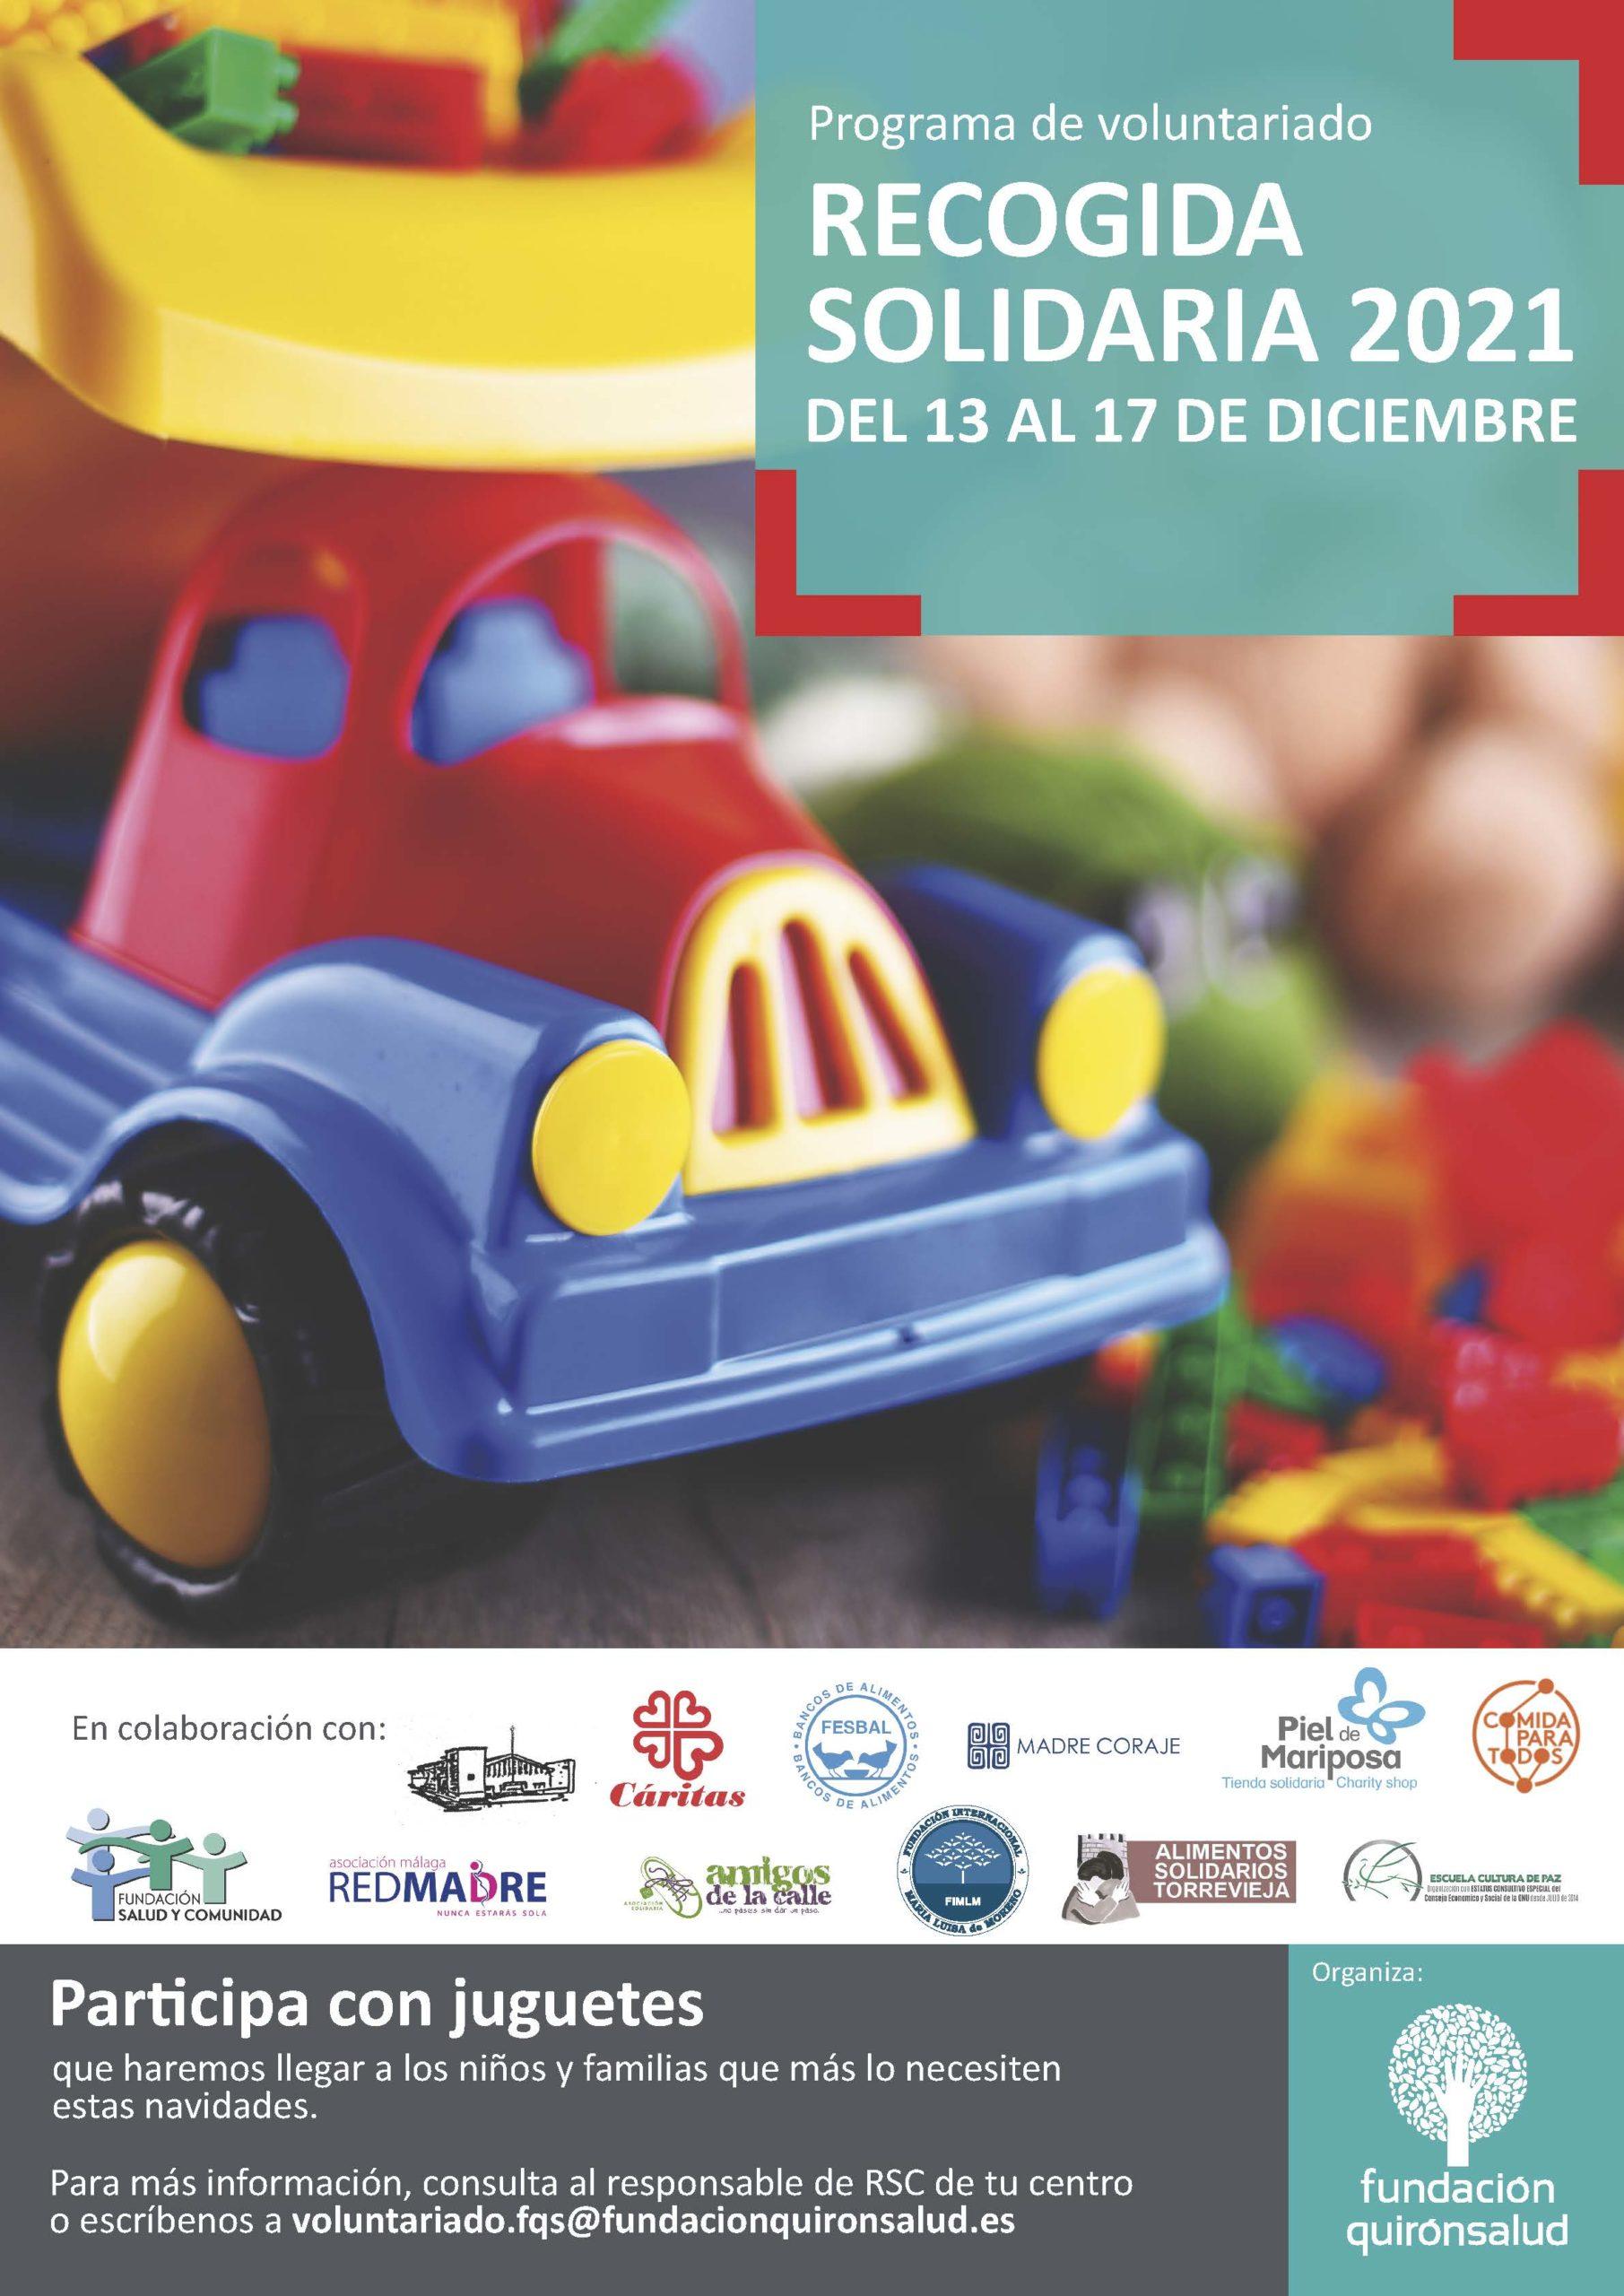 Los Hospitales Quirónsalud de Andalucía promueven campañas de donación de alimentos y de juguetes